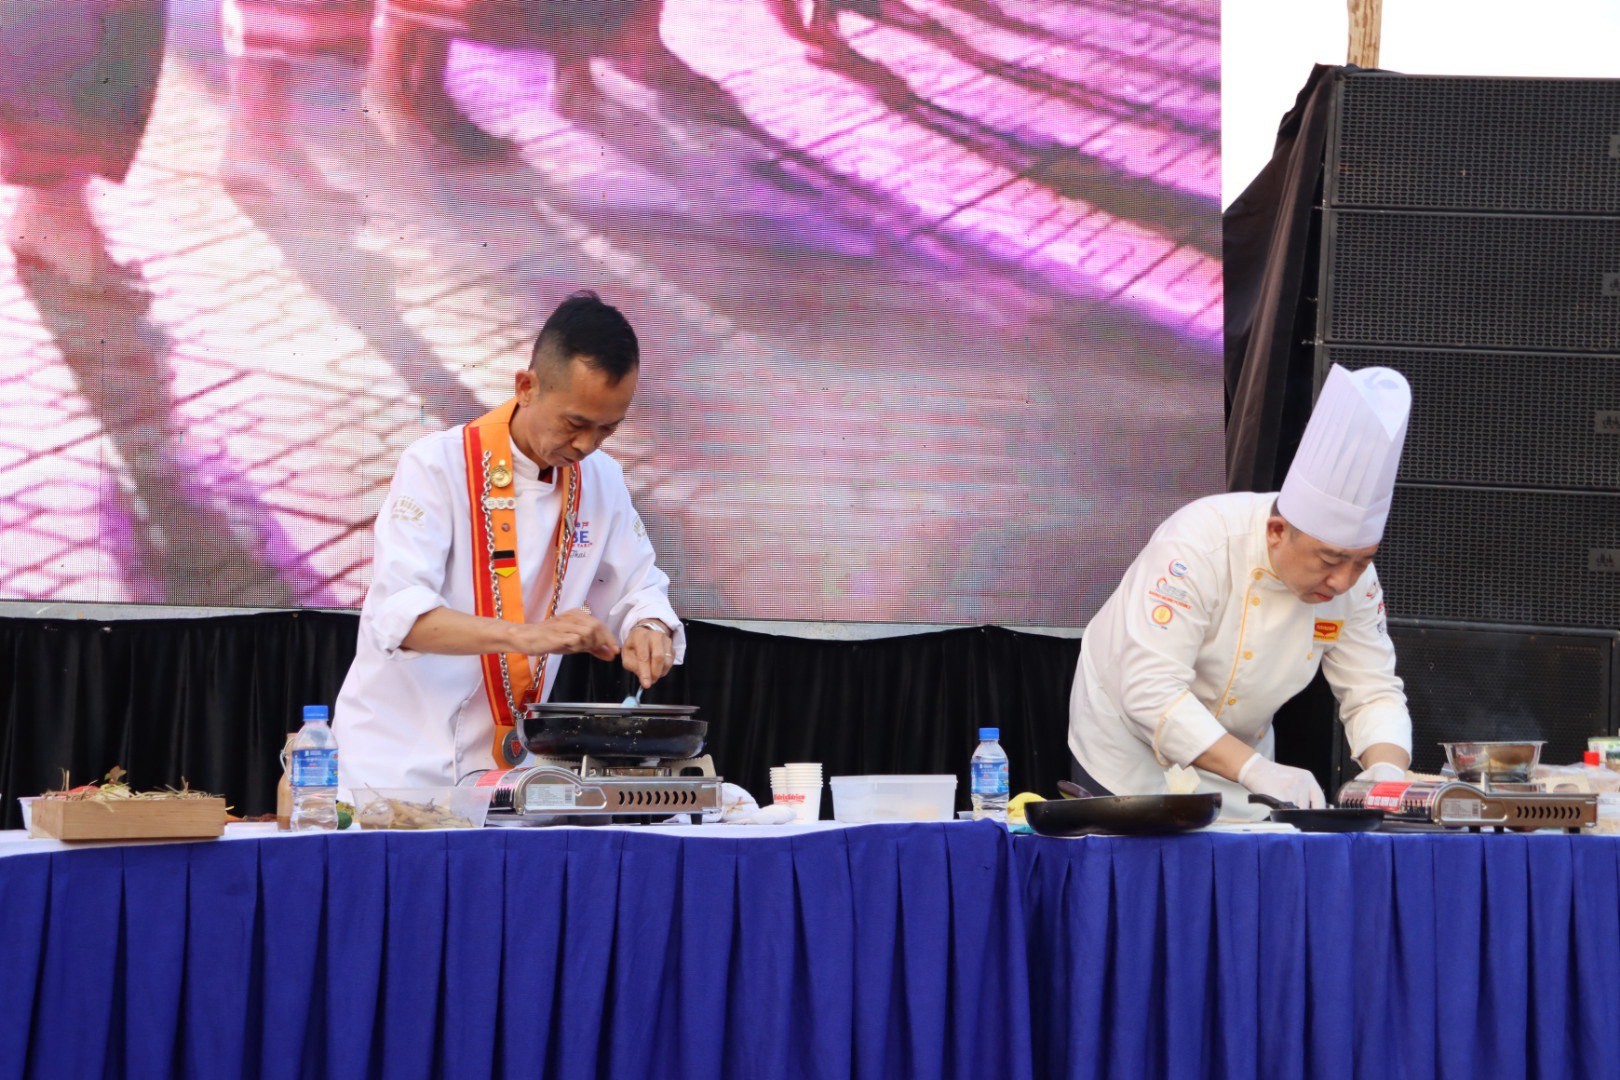 Hội thi có sự tham gia của nhiều đầu bếp đến từ các quốc gia khác nhau.